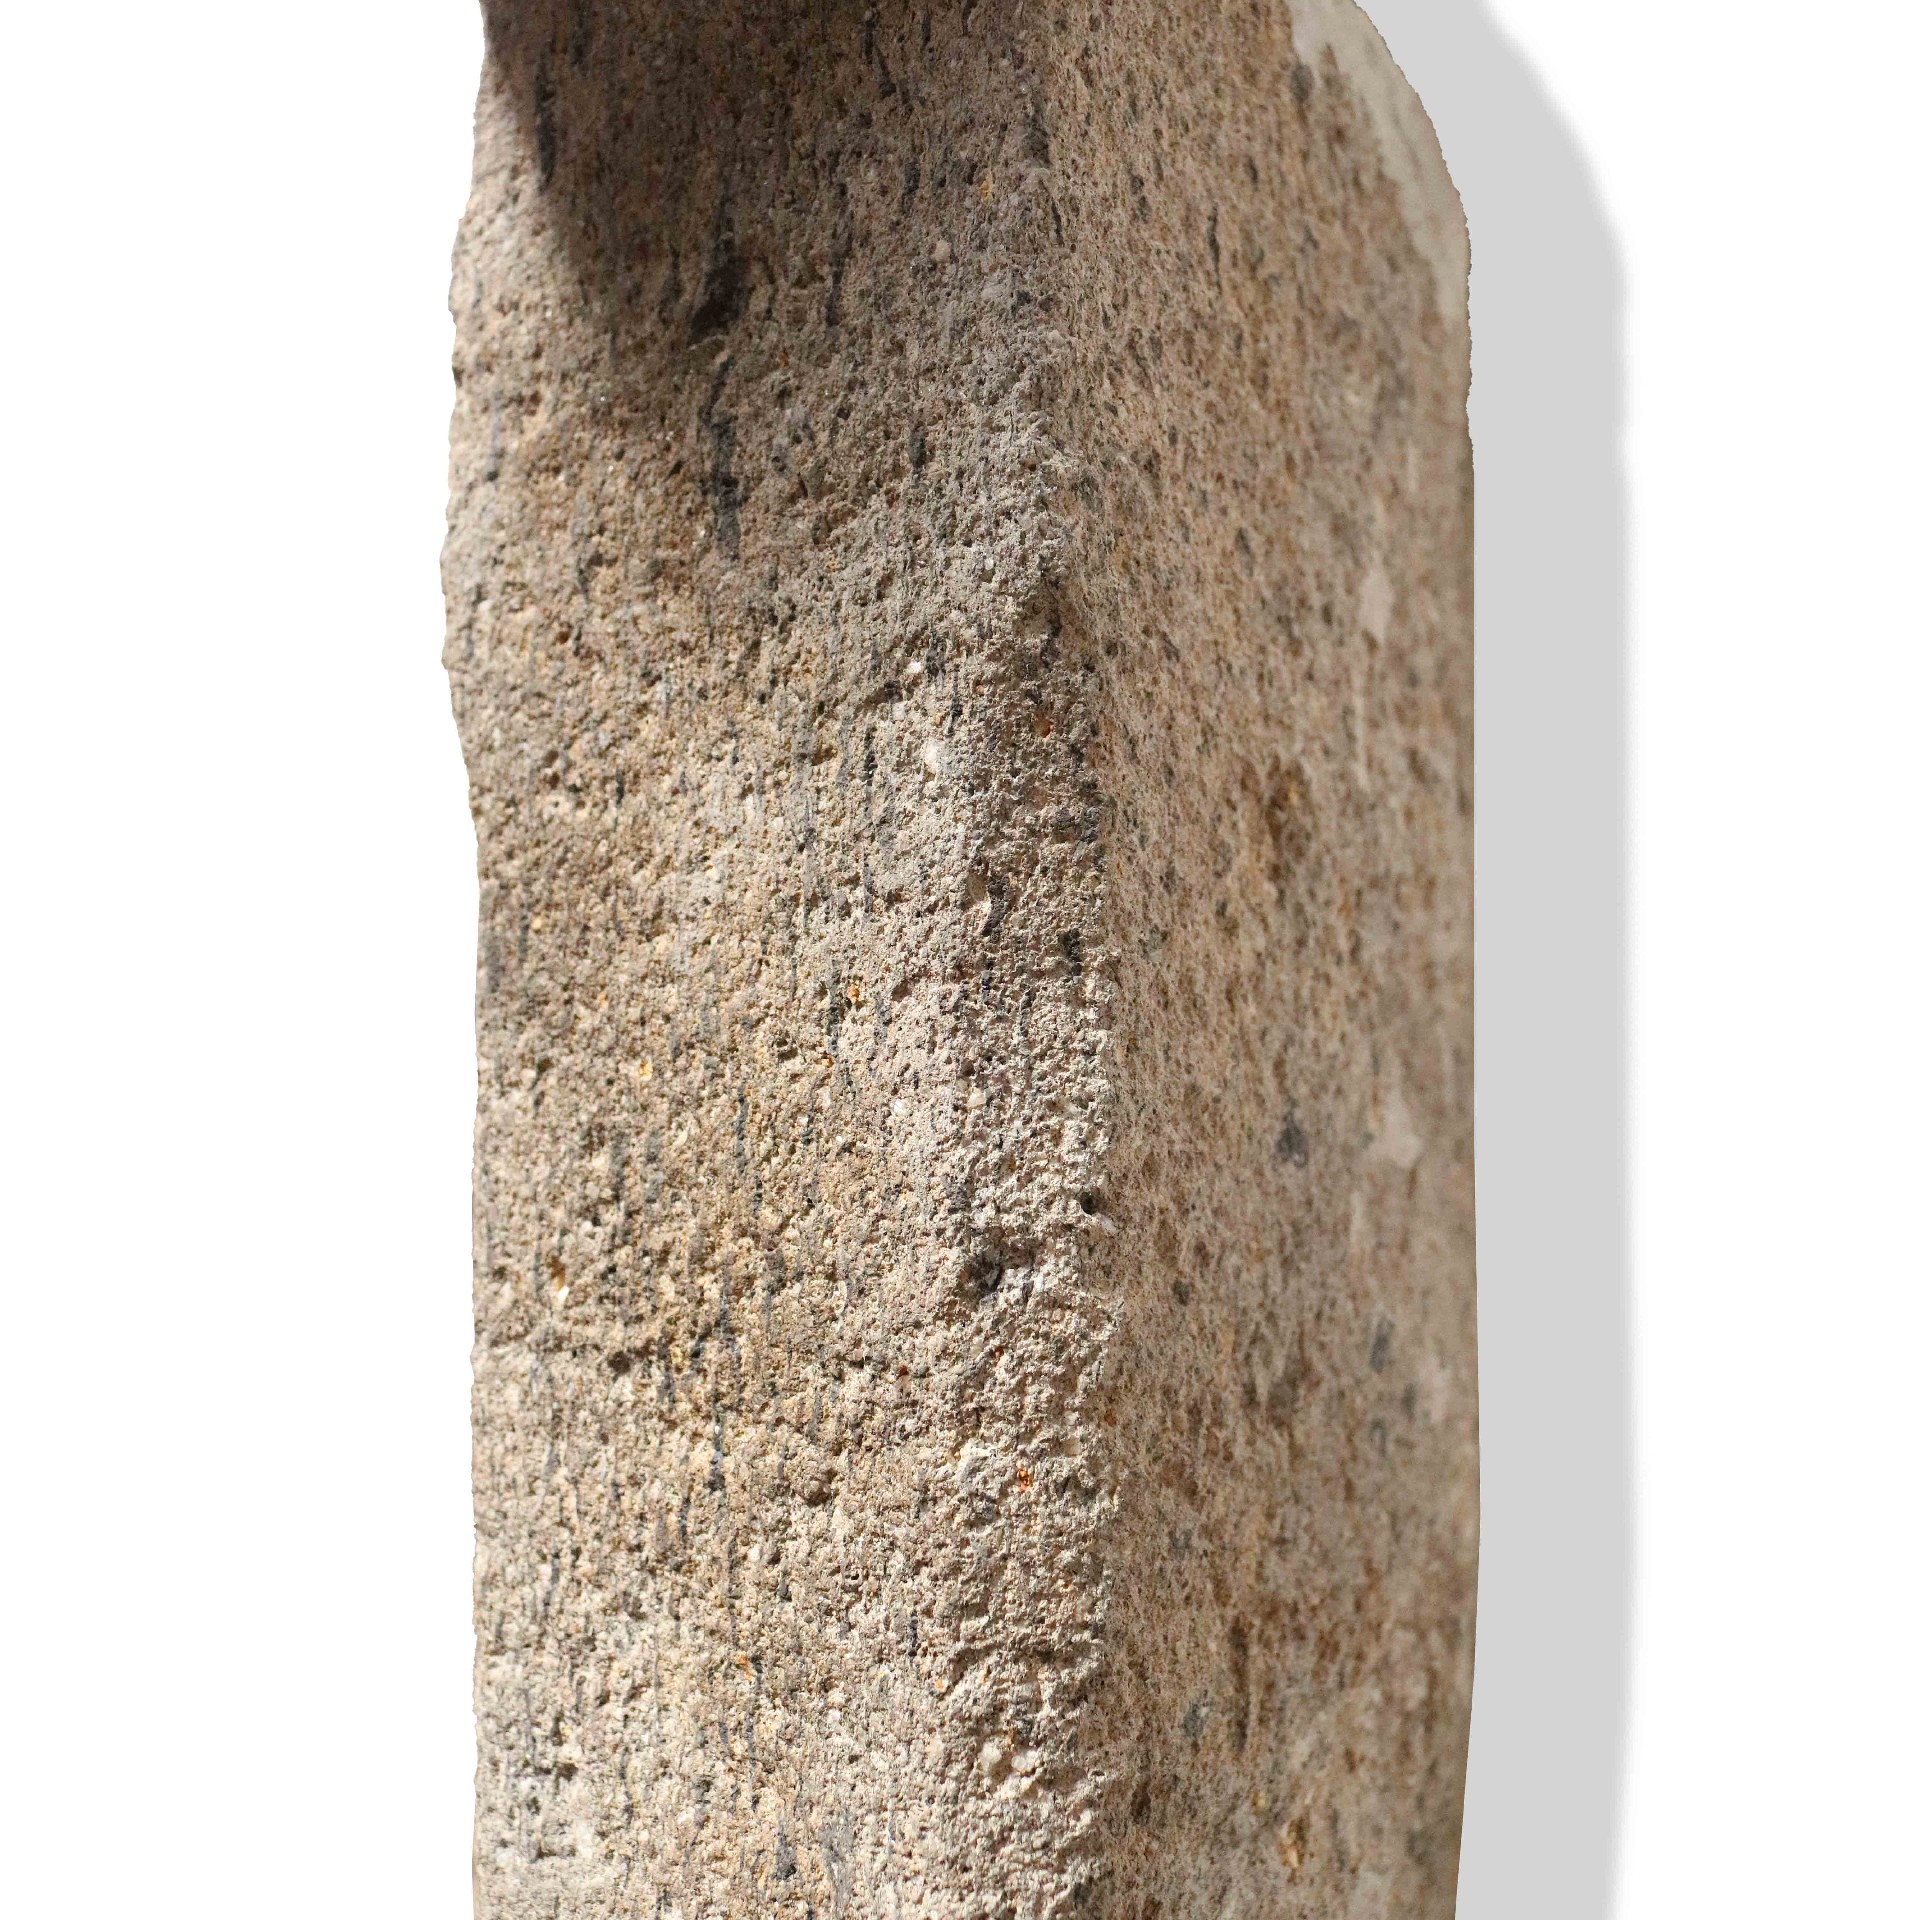 Camino antico in pietra, cm 172x178 h. Epoca 1400. - 1